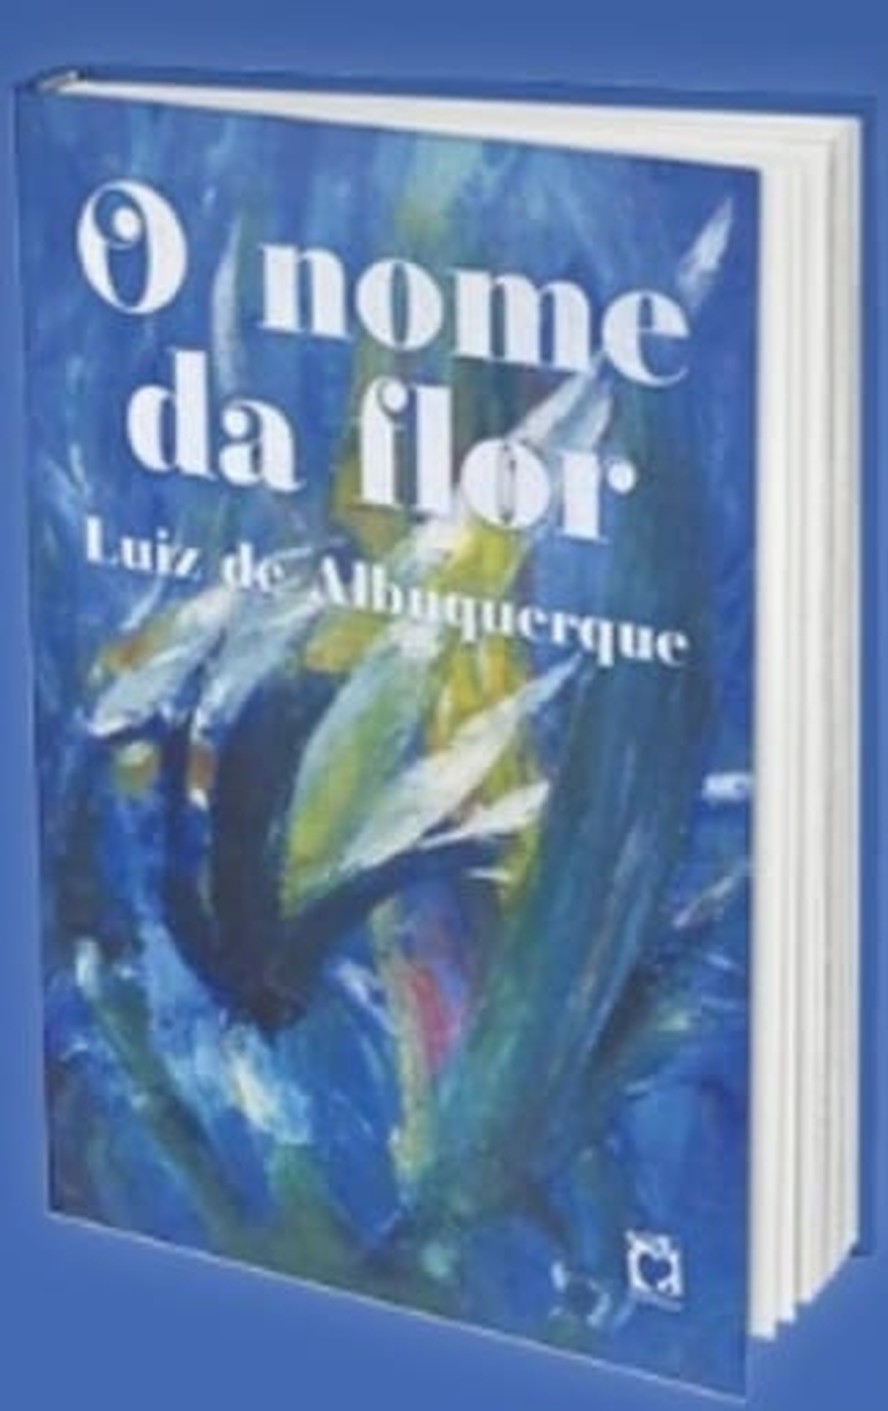 Poesia em Icaraí: Luiz de Albuquerque lança novo livro